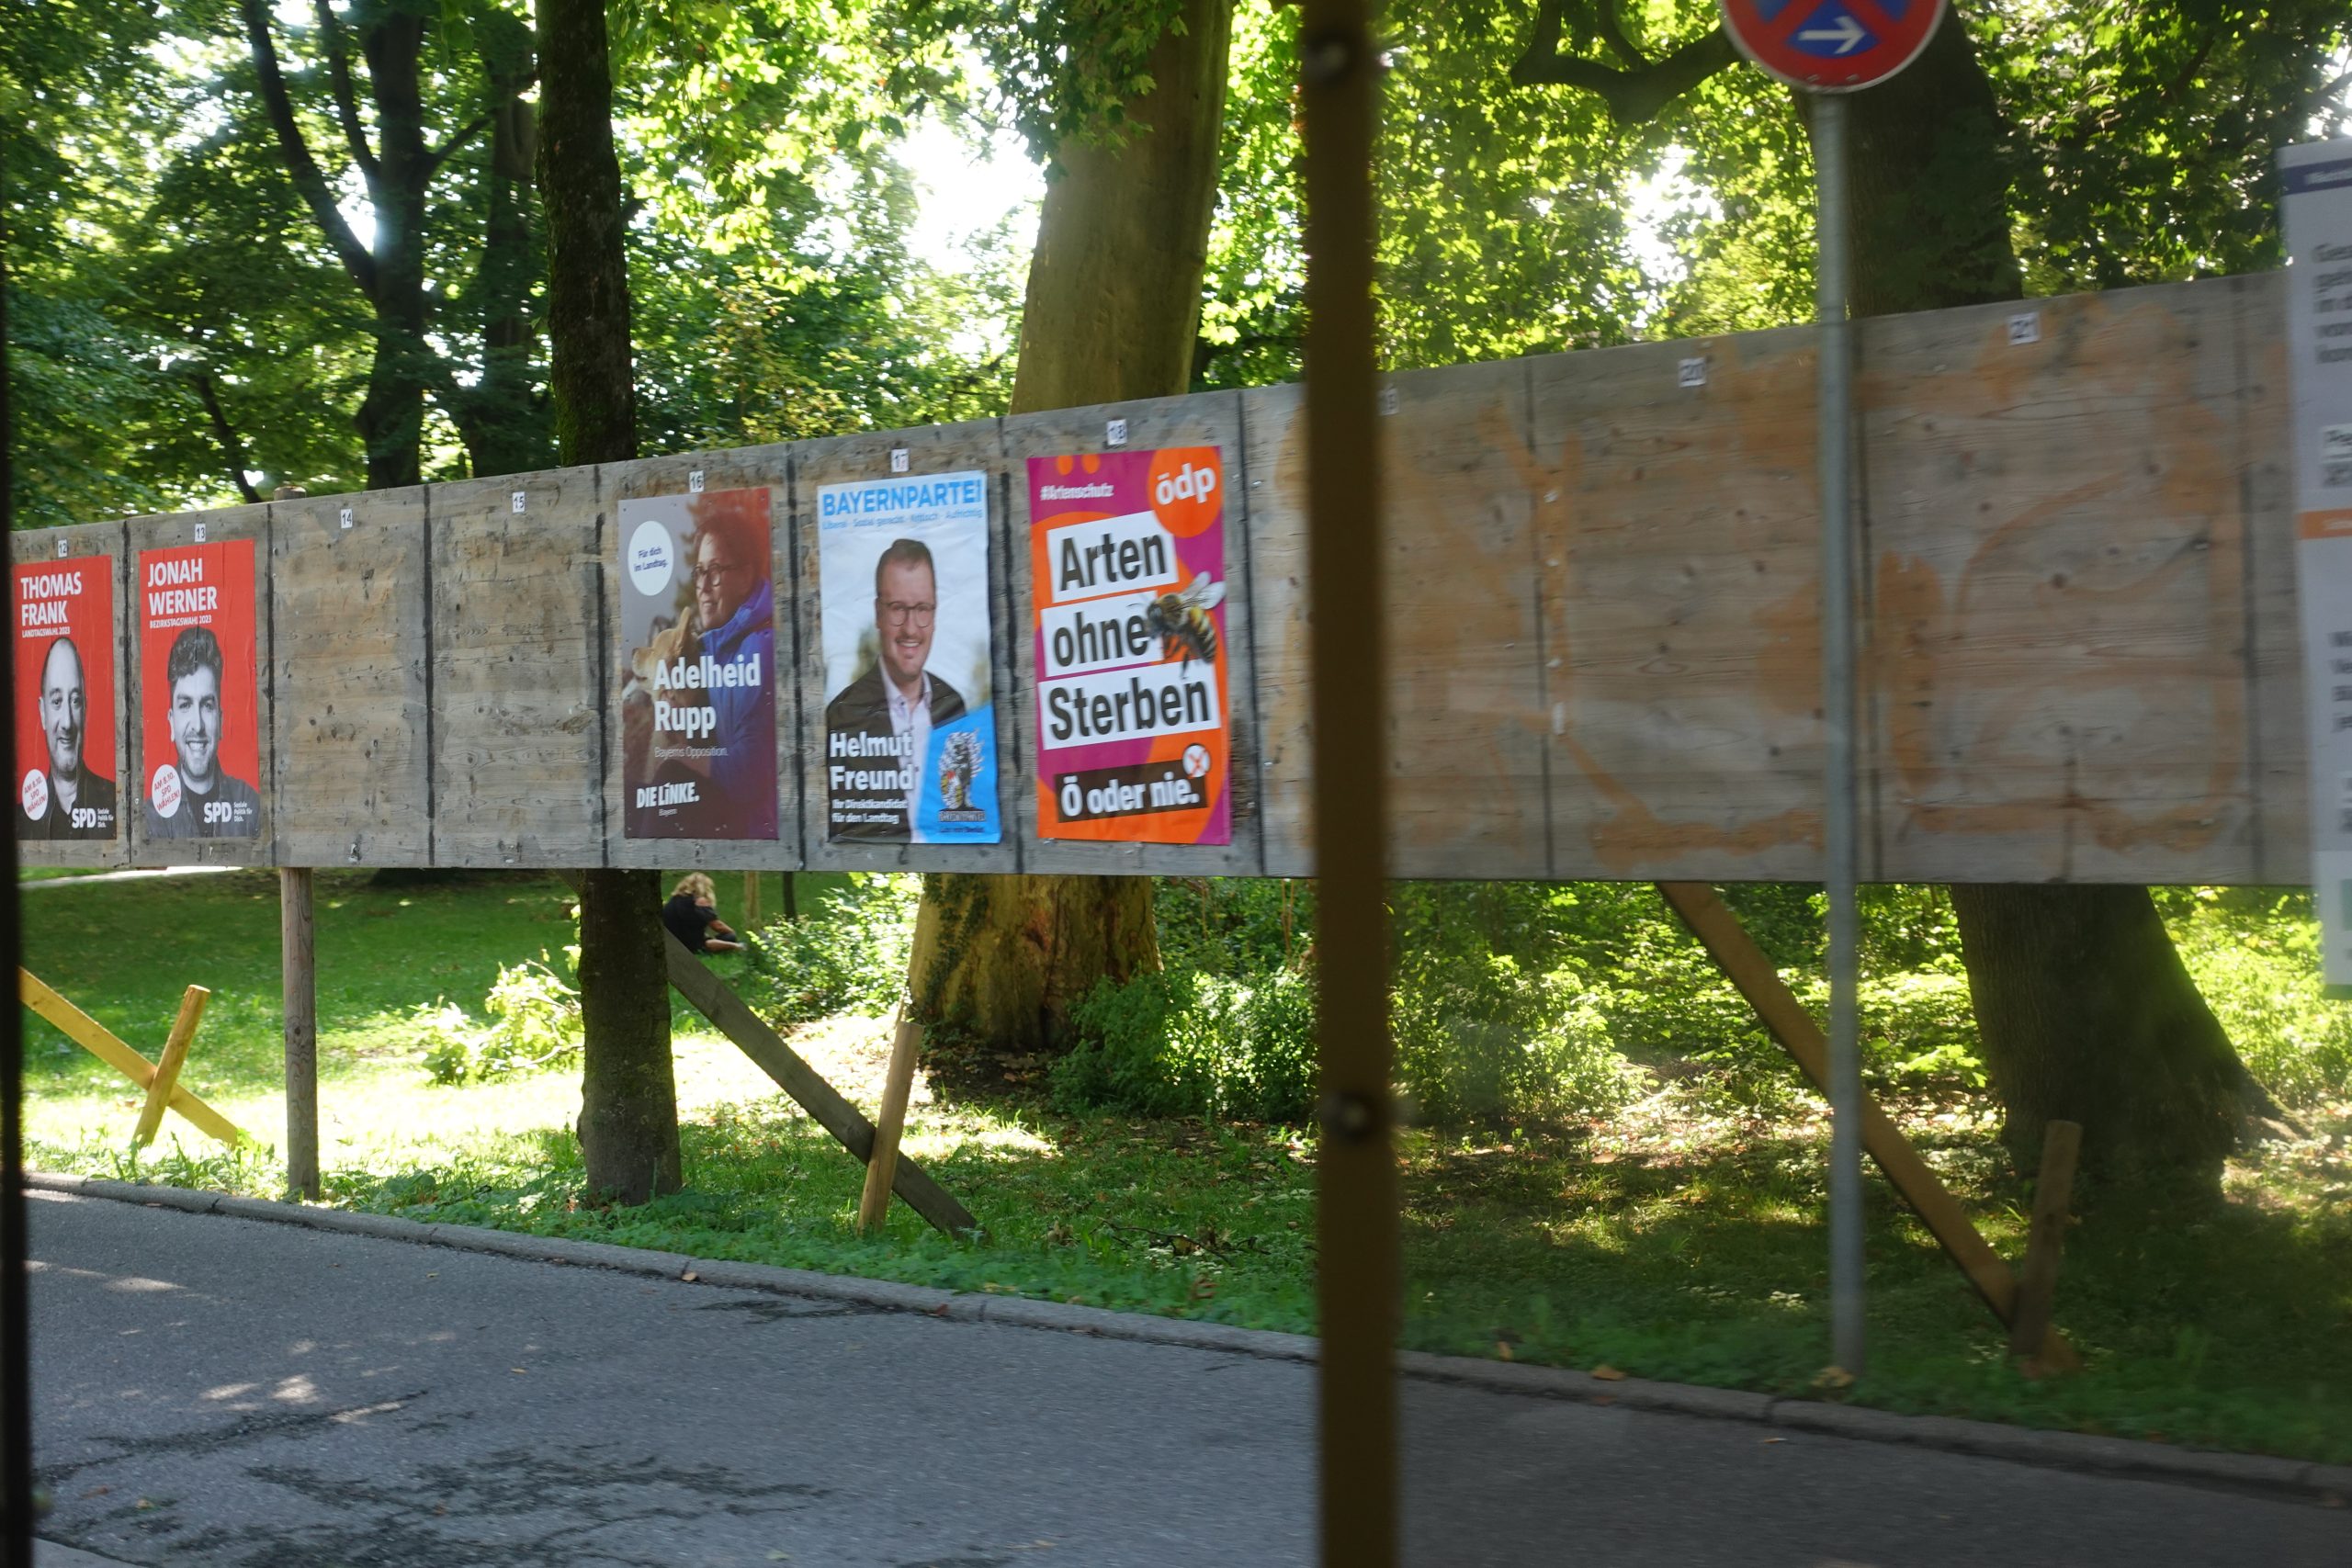 Wahlkampfplakate bei der Loretowiese in Rosenheim. Foto: Innpuls.me